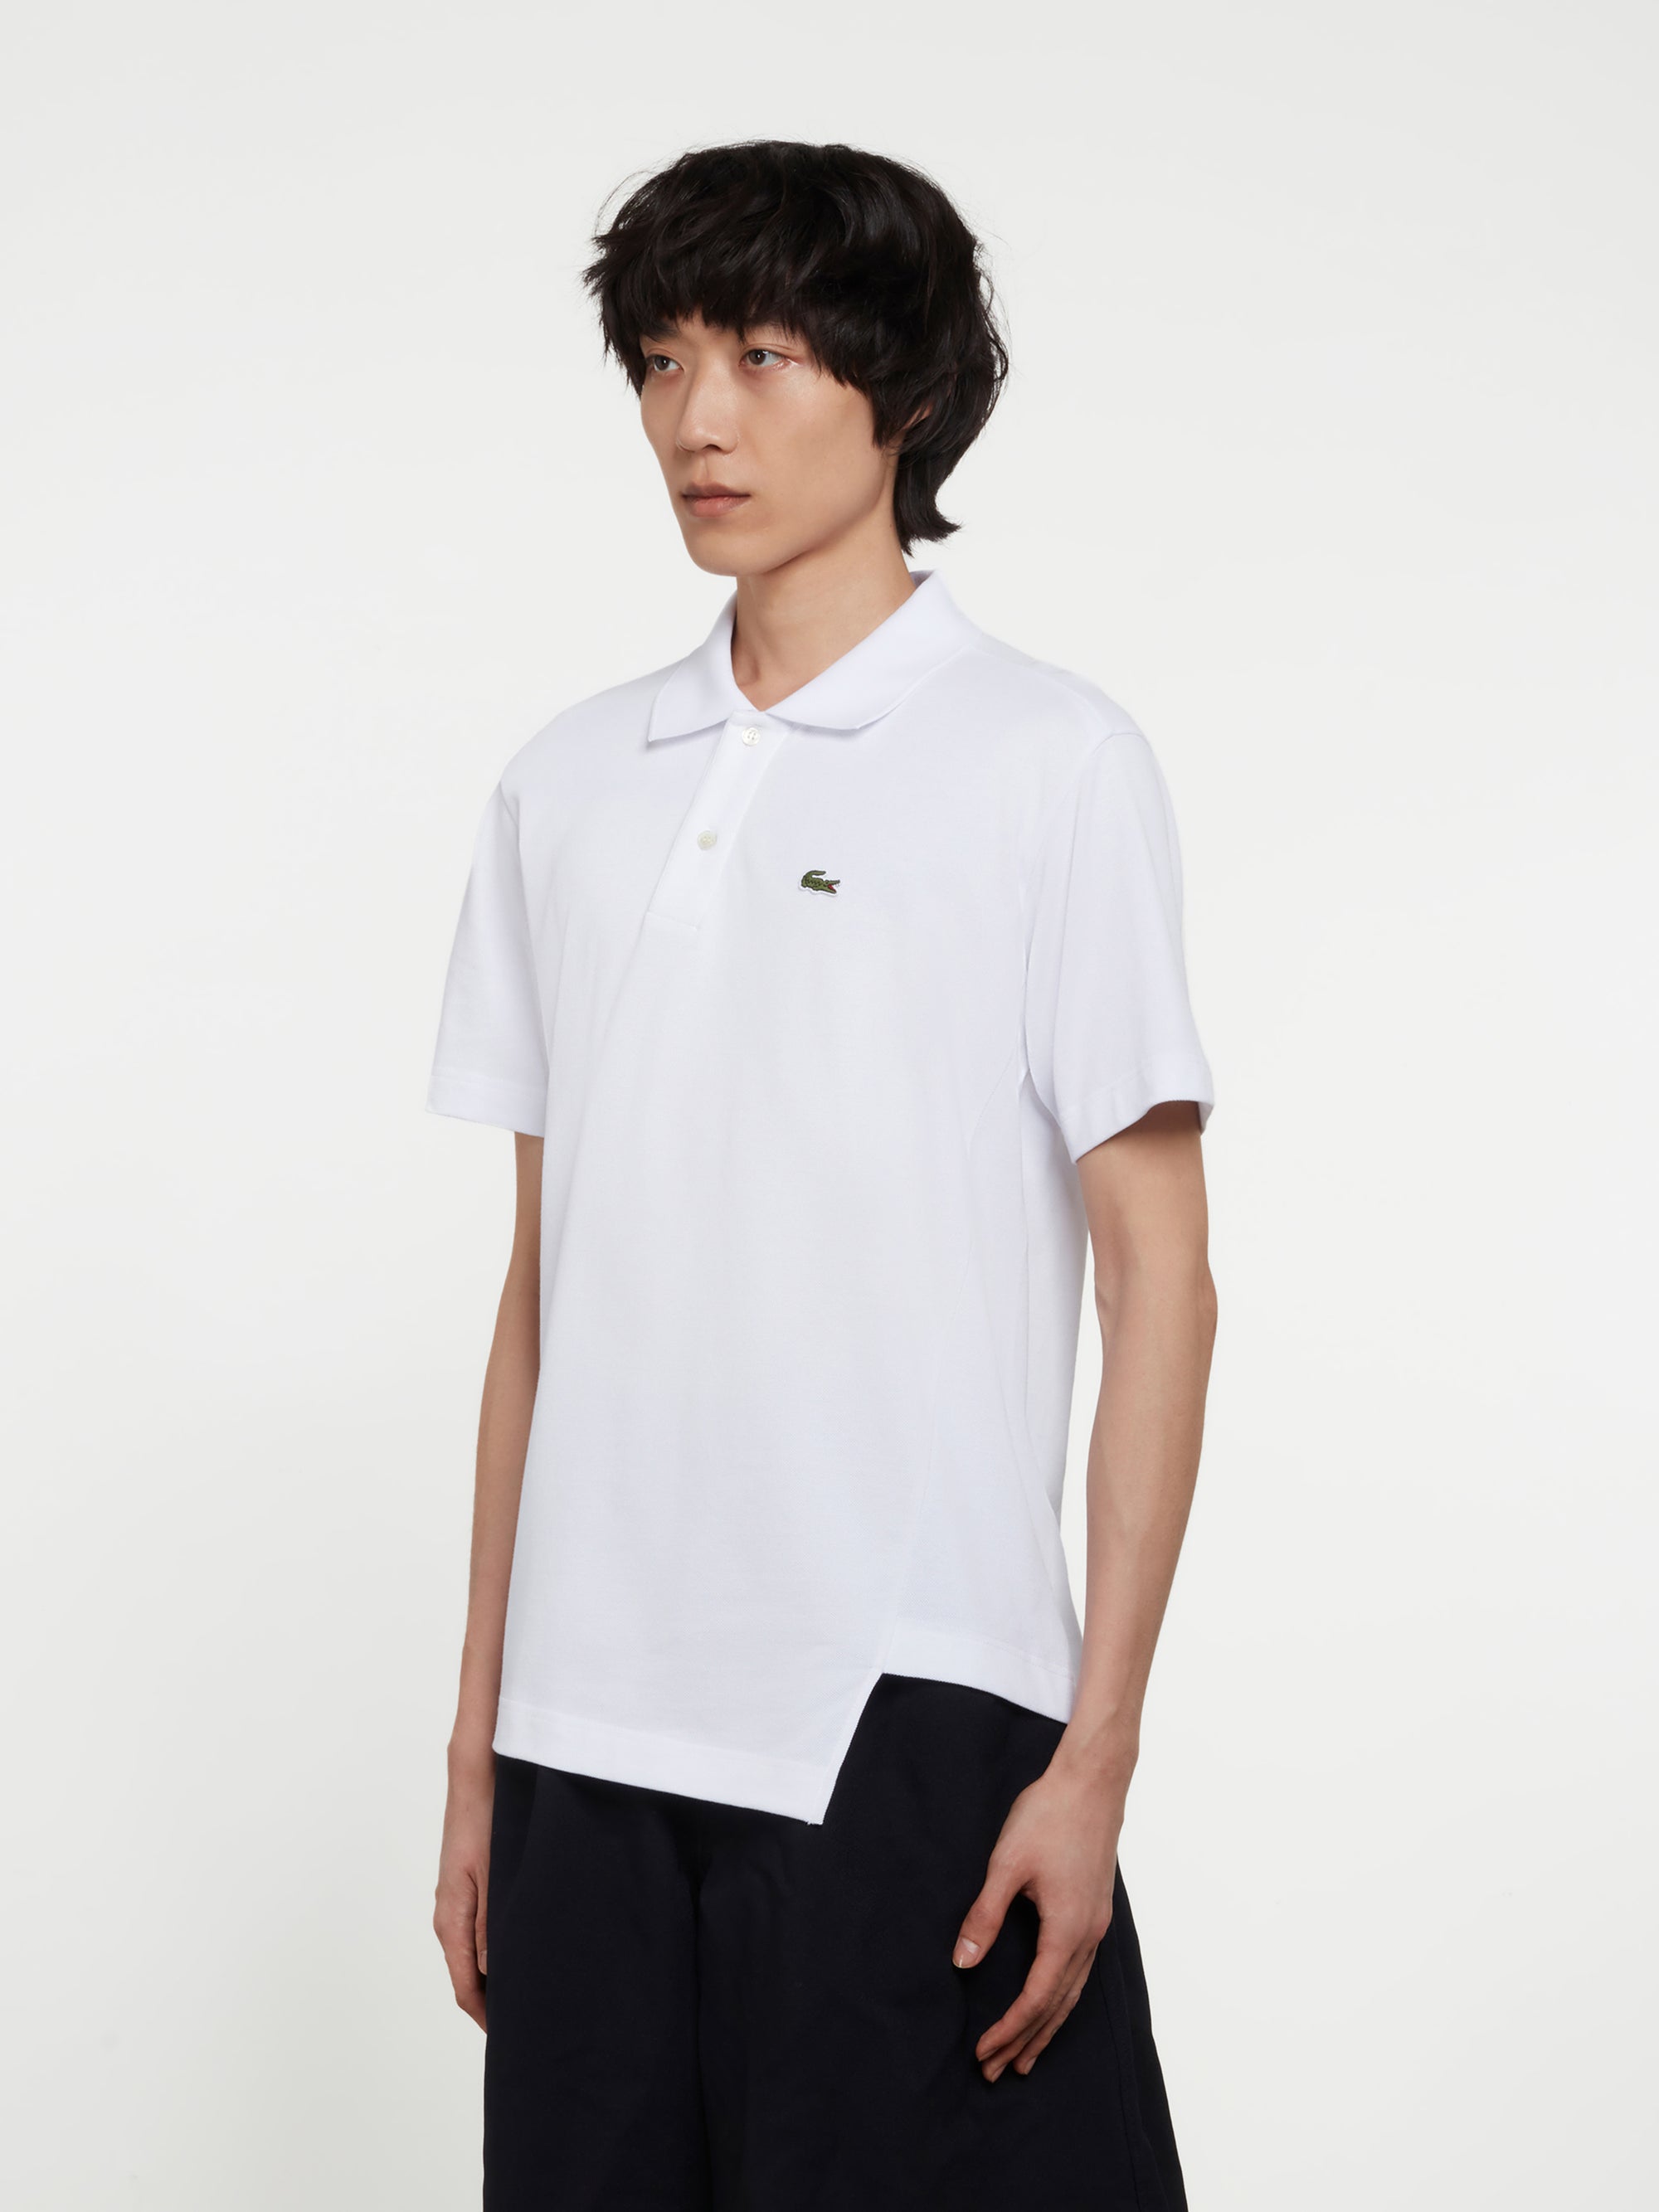 CDG Shirt - Lacoste Men's Asymmetric Polo Shirt - (White) view 2